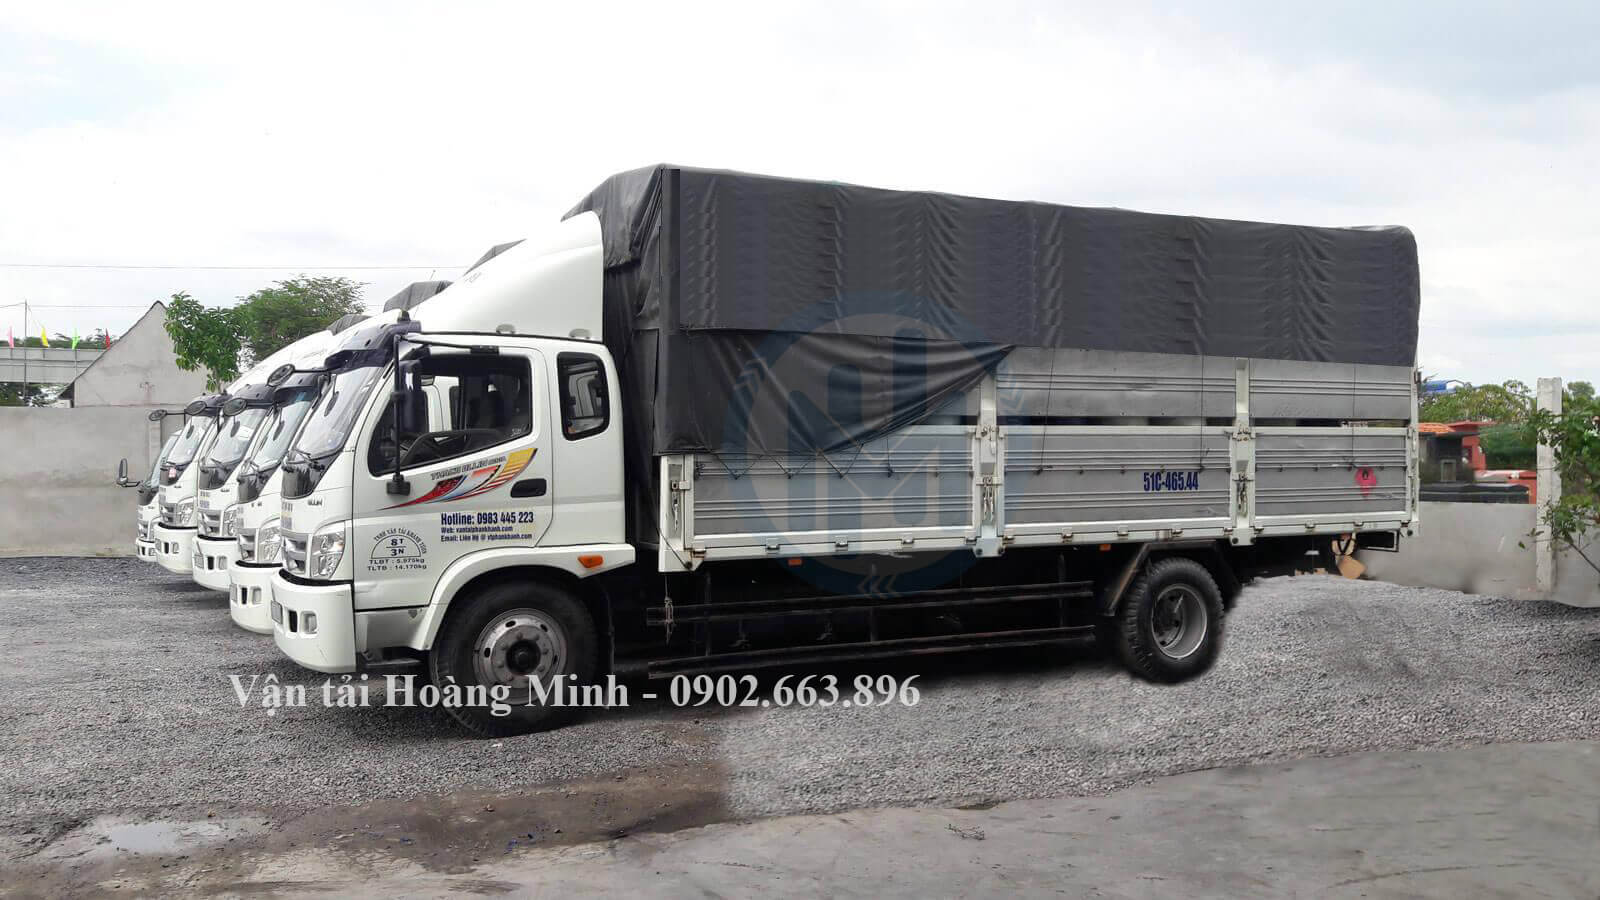 Hoàng Minh cho thuê xe tải từ 2 đến 32 tấn.jpg